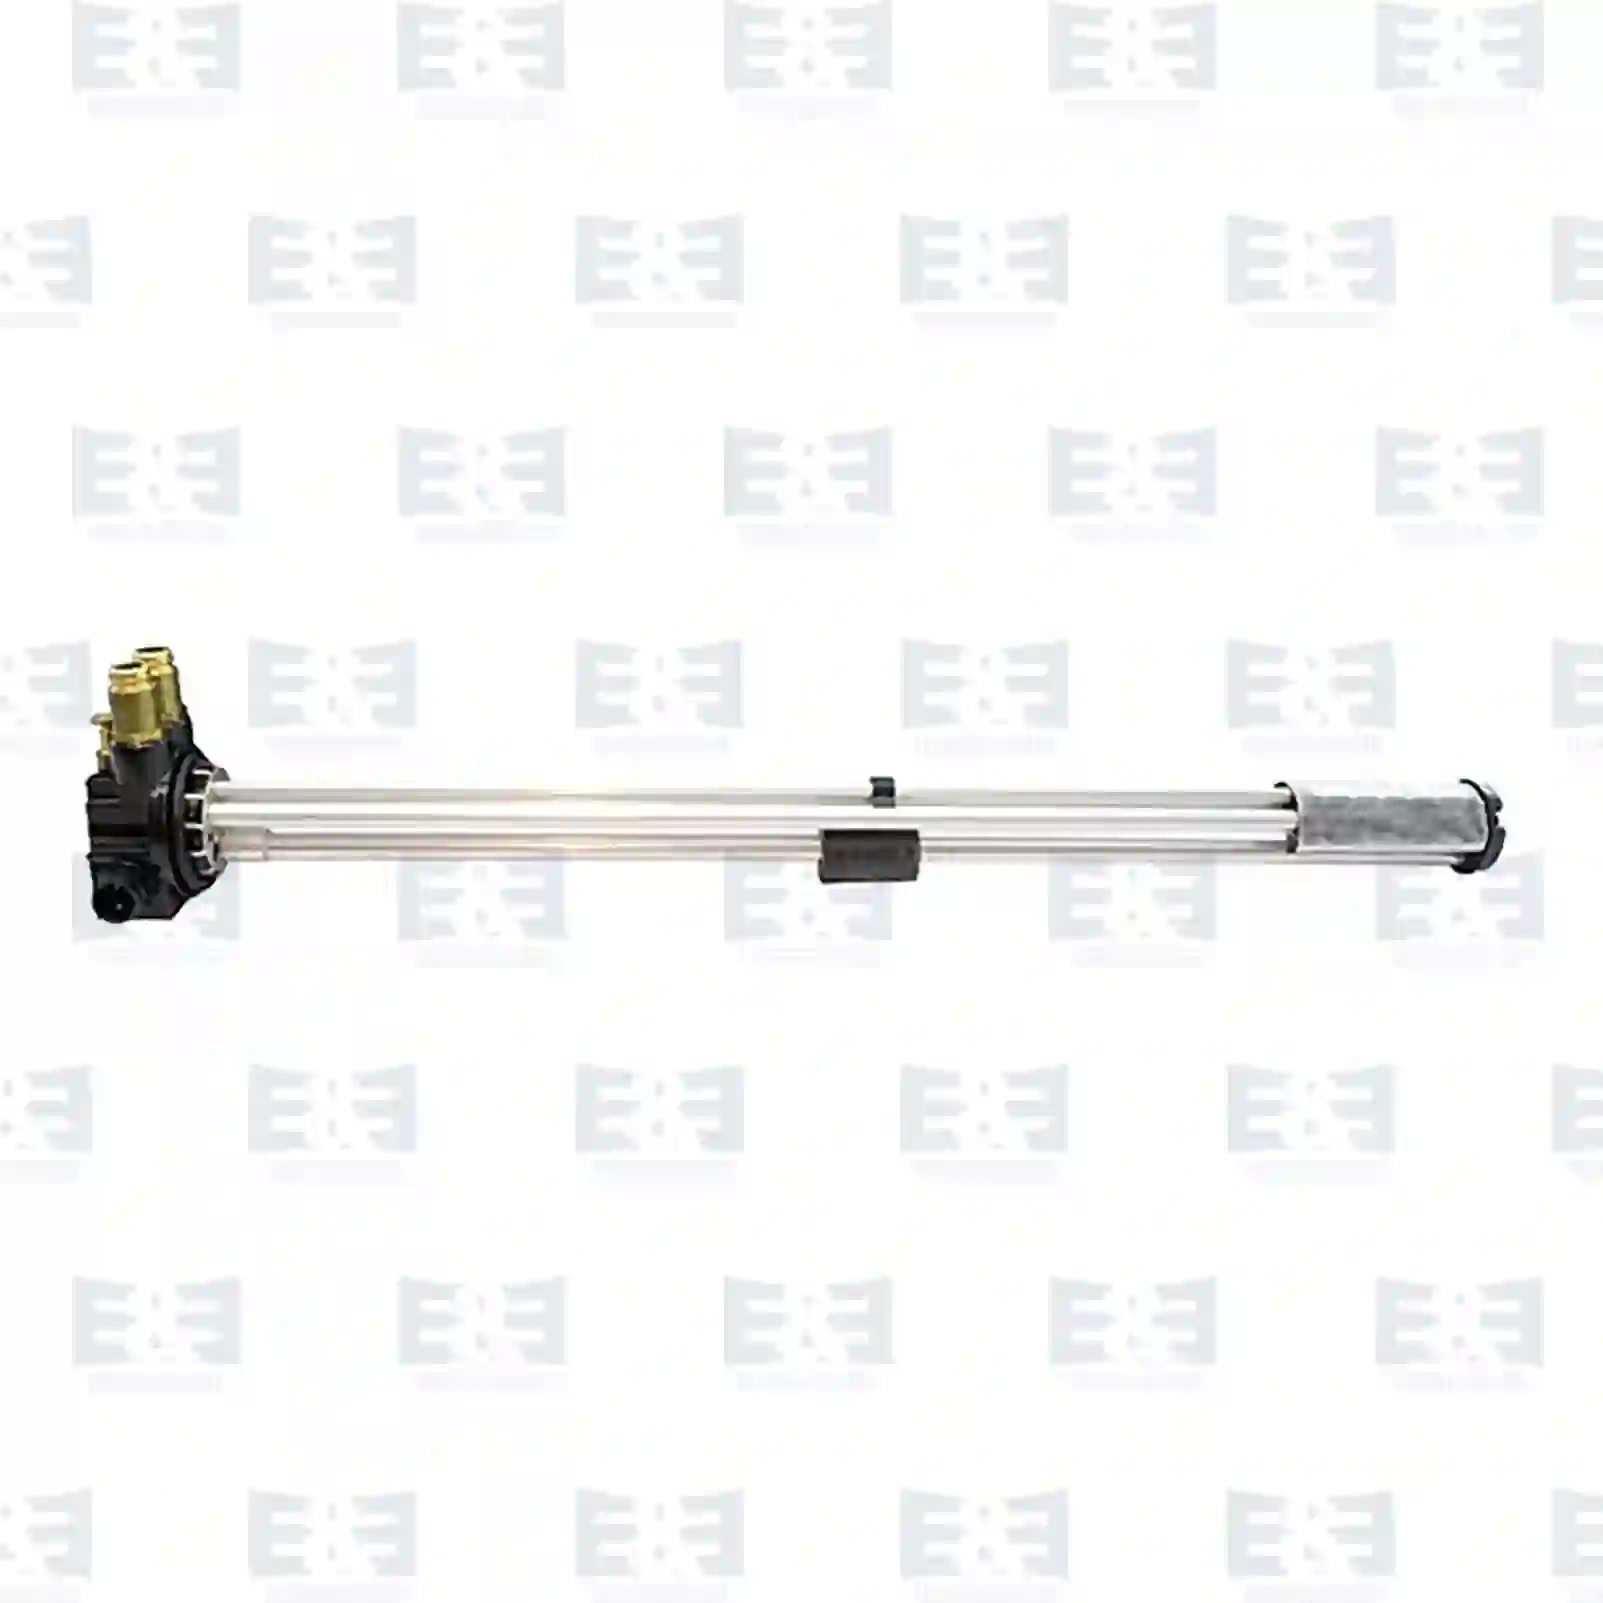  Fuel level sensor, steel tank || E&E Truck Spare Parts | Truck Spare Parts, Auotomotive Spare Parts